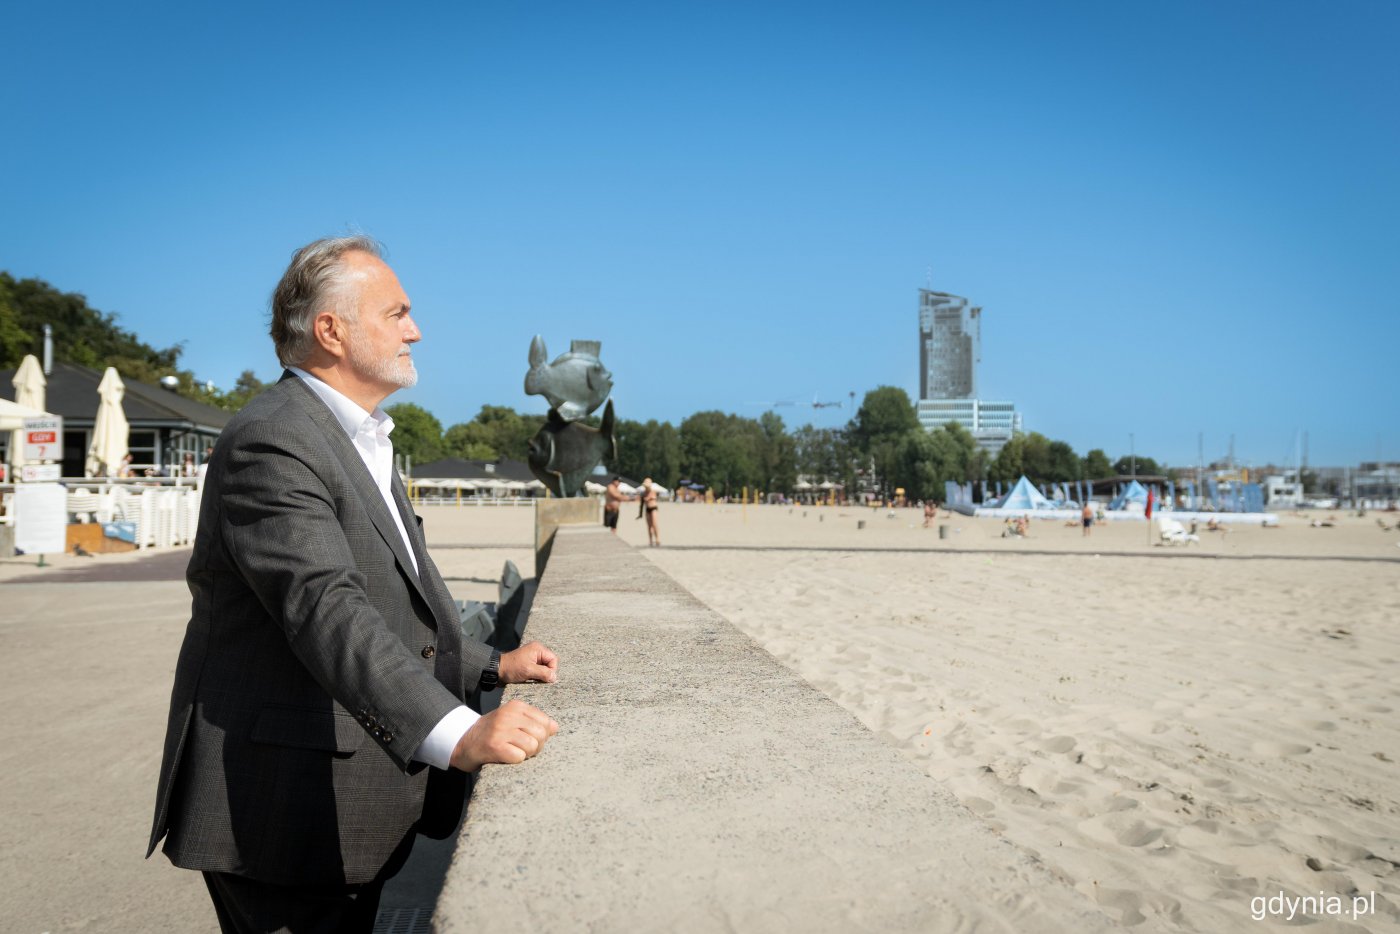 Wojciech Szczurek opiera się o betonowy falochron na bulwarze Nadmorskim w Gdyni. W tle plaża, budynki, ludzie na plaży, pomnik ryb.